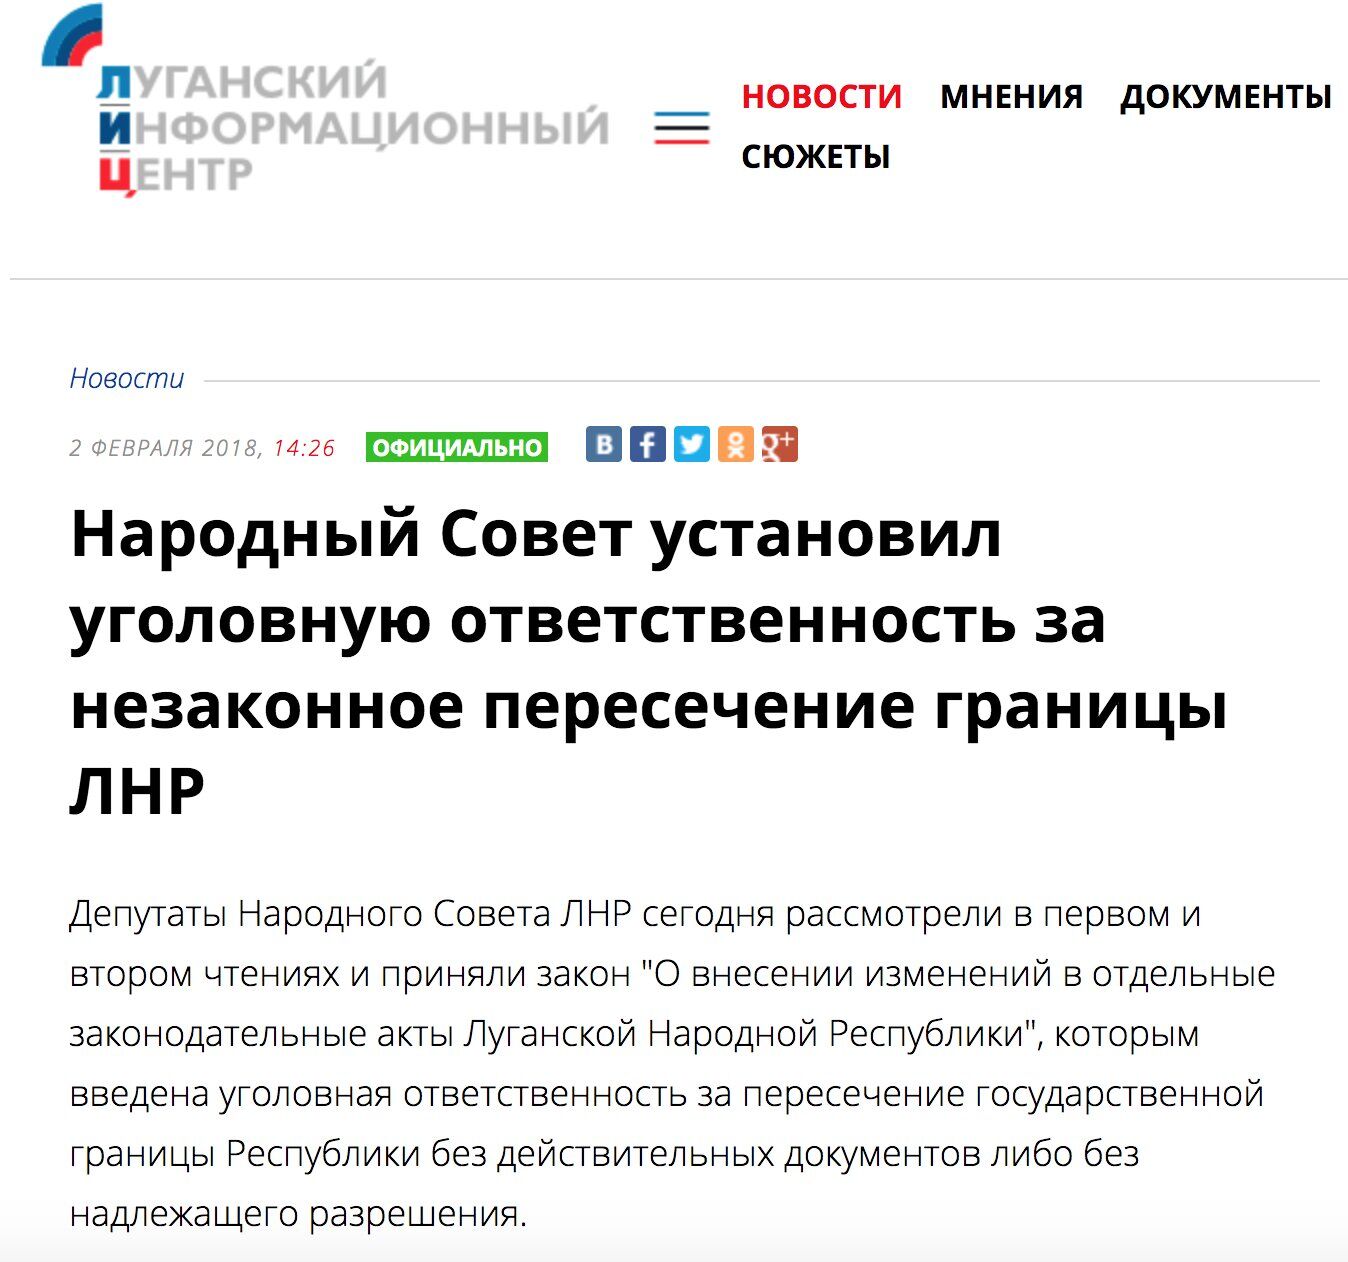 "Граница" на замке: жителям "ЛНР" ввели наказание за поездки в "ДНР"